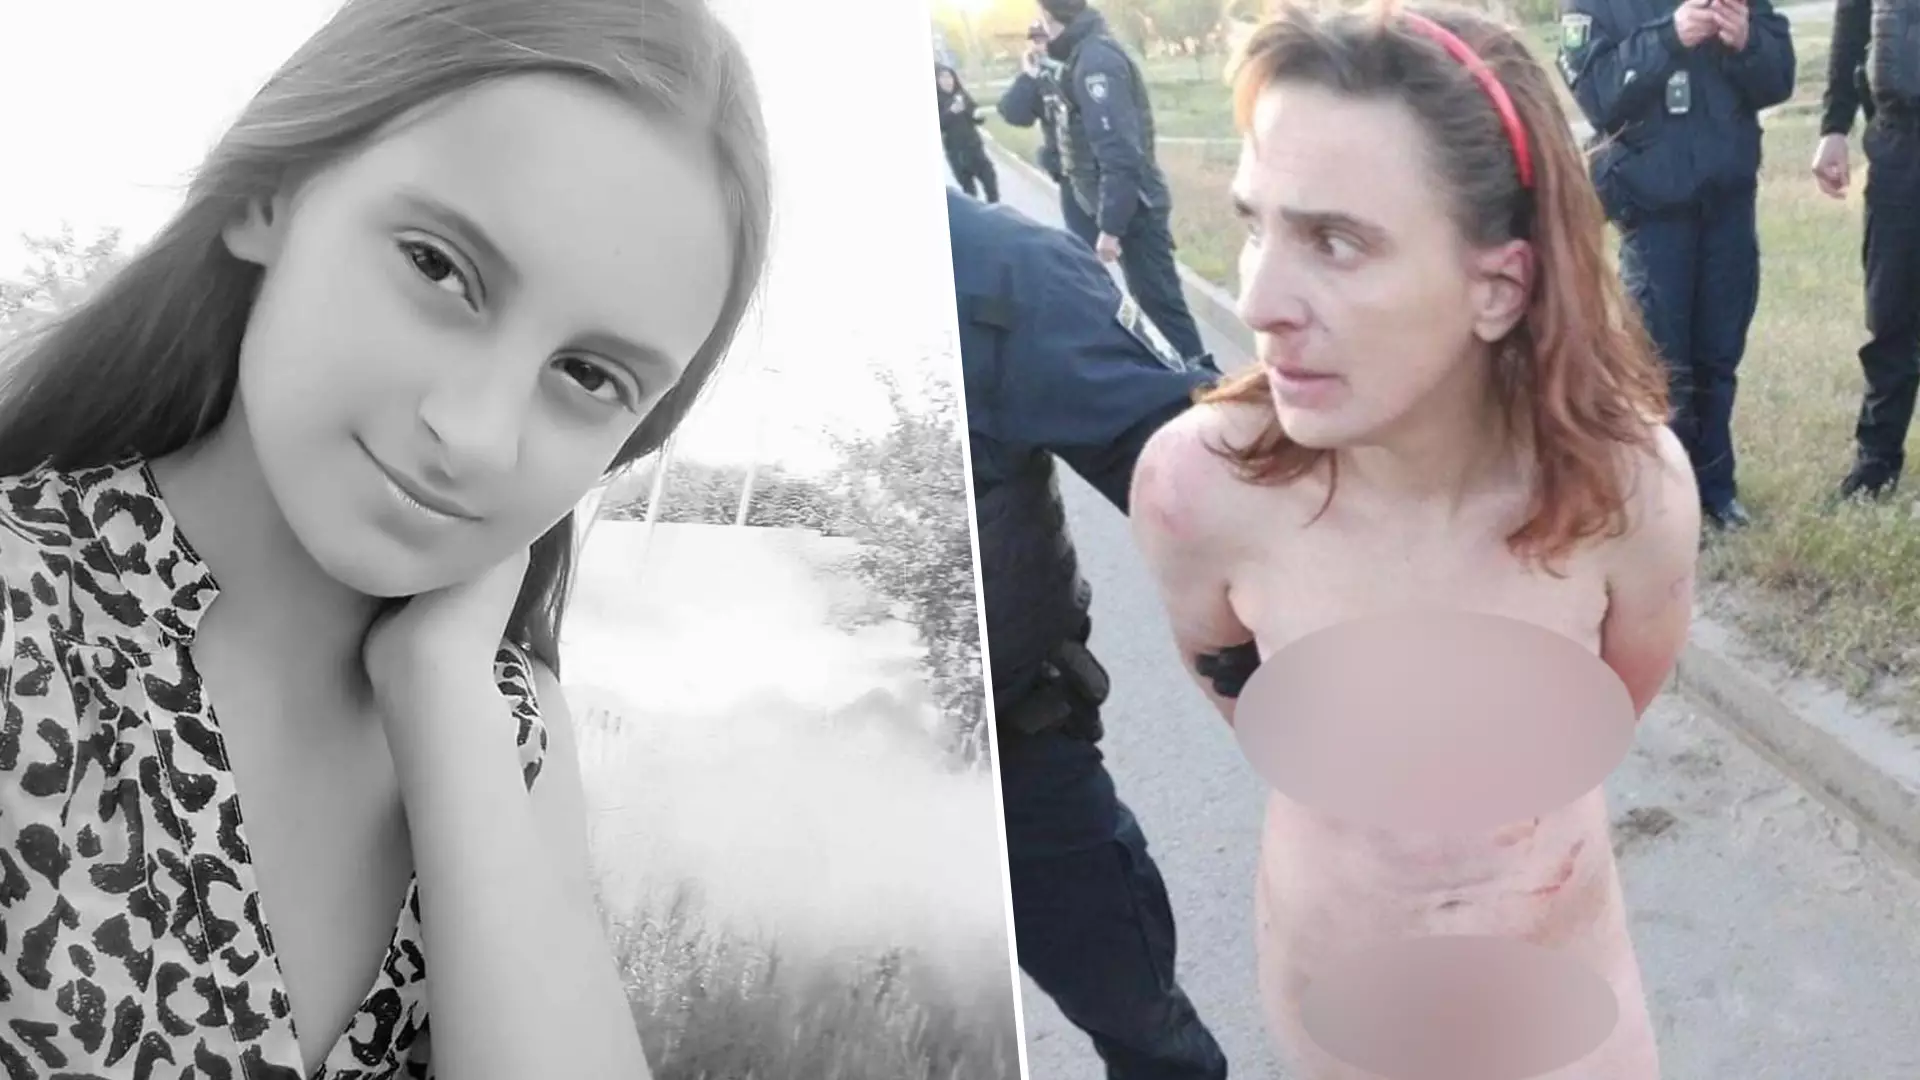 В Харькове голая женщина убила девочку и отрезала ей голову - что известно  - новости Харькова - Новости Харькова | Сегодня